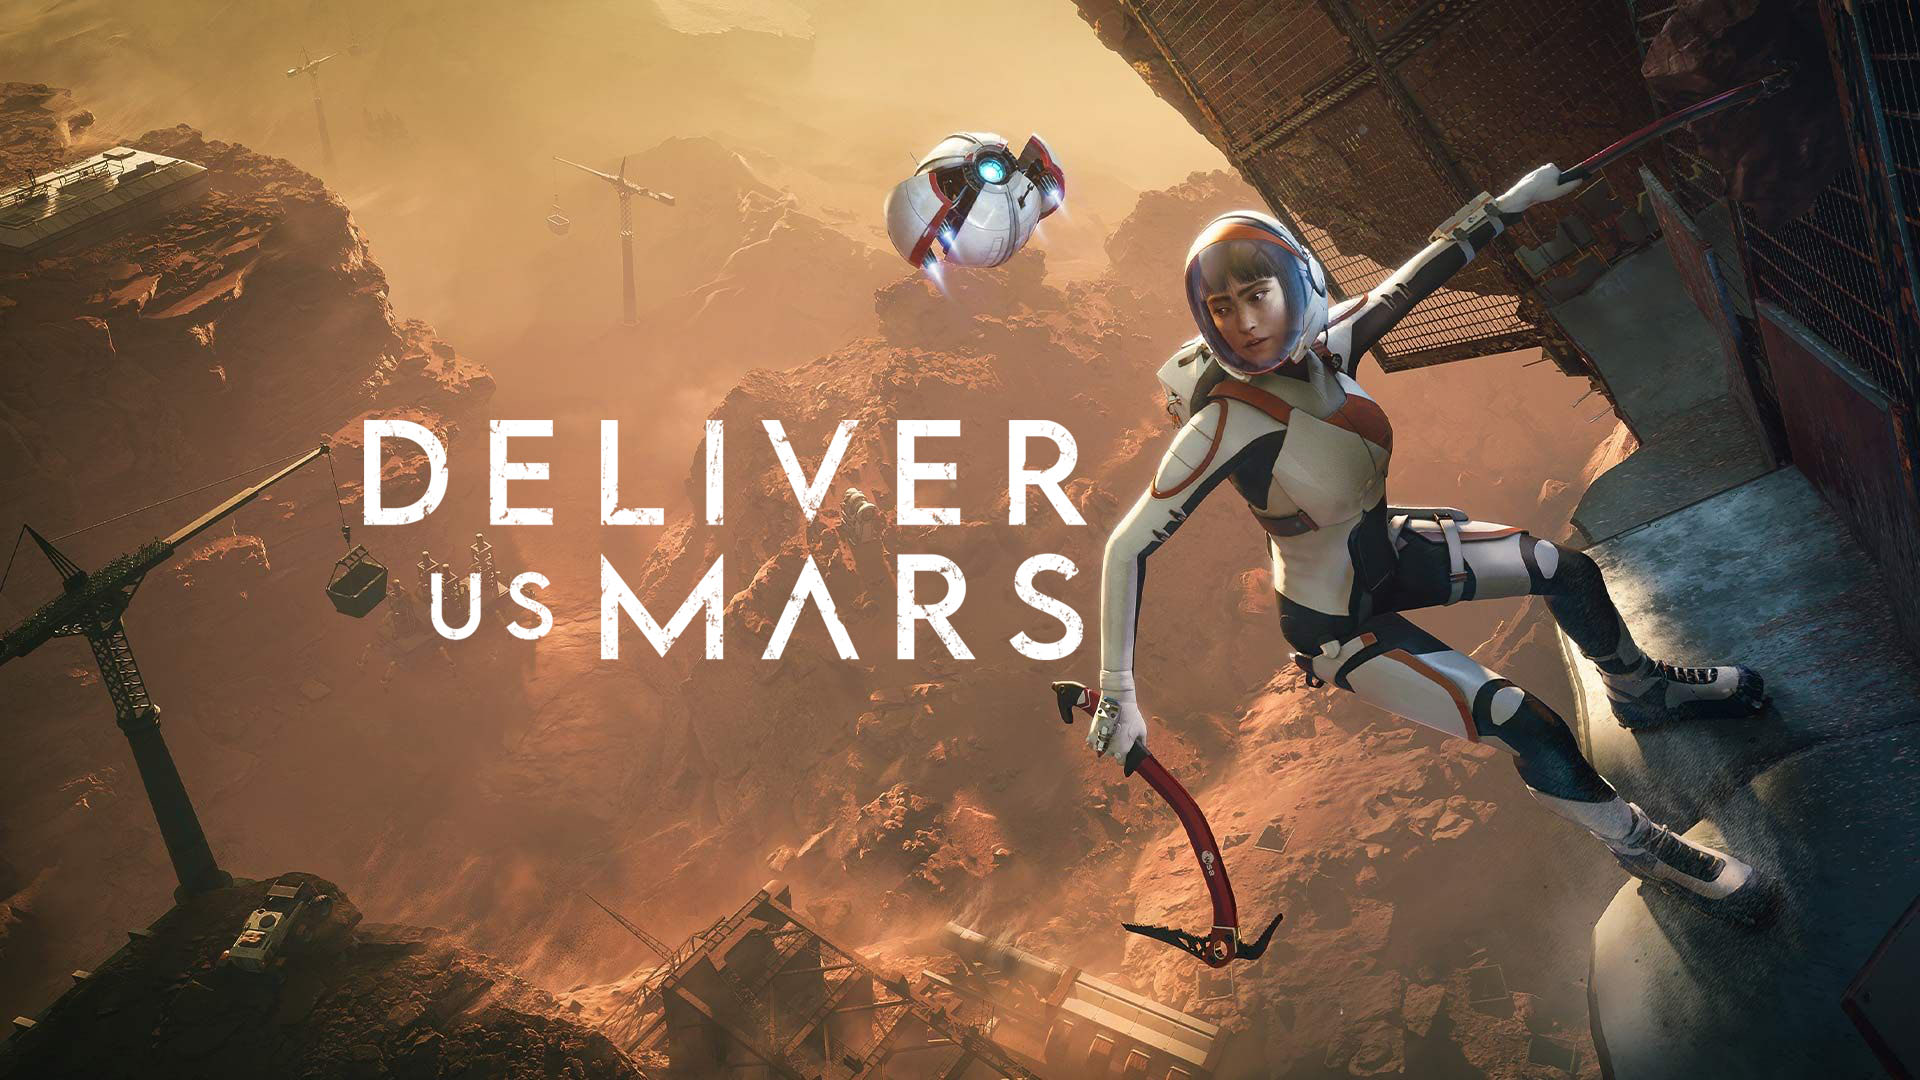 Deliver Us Mars